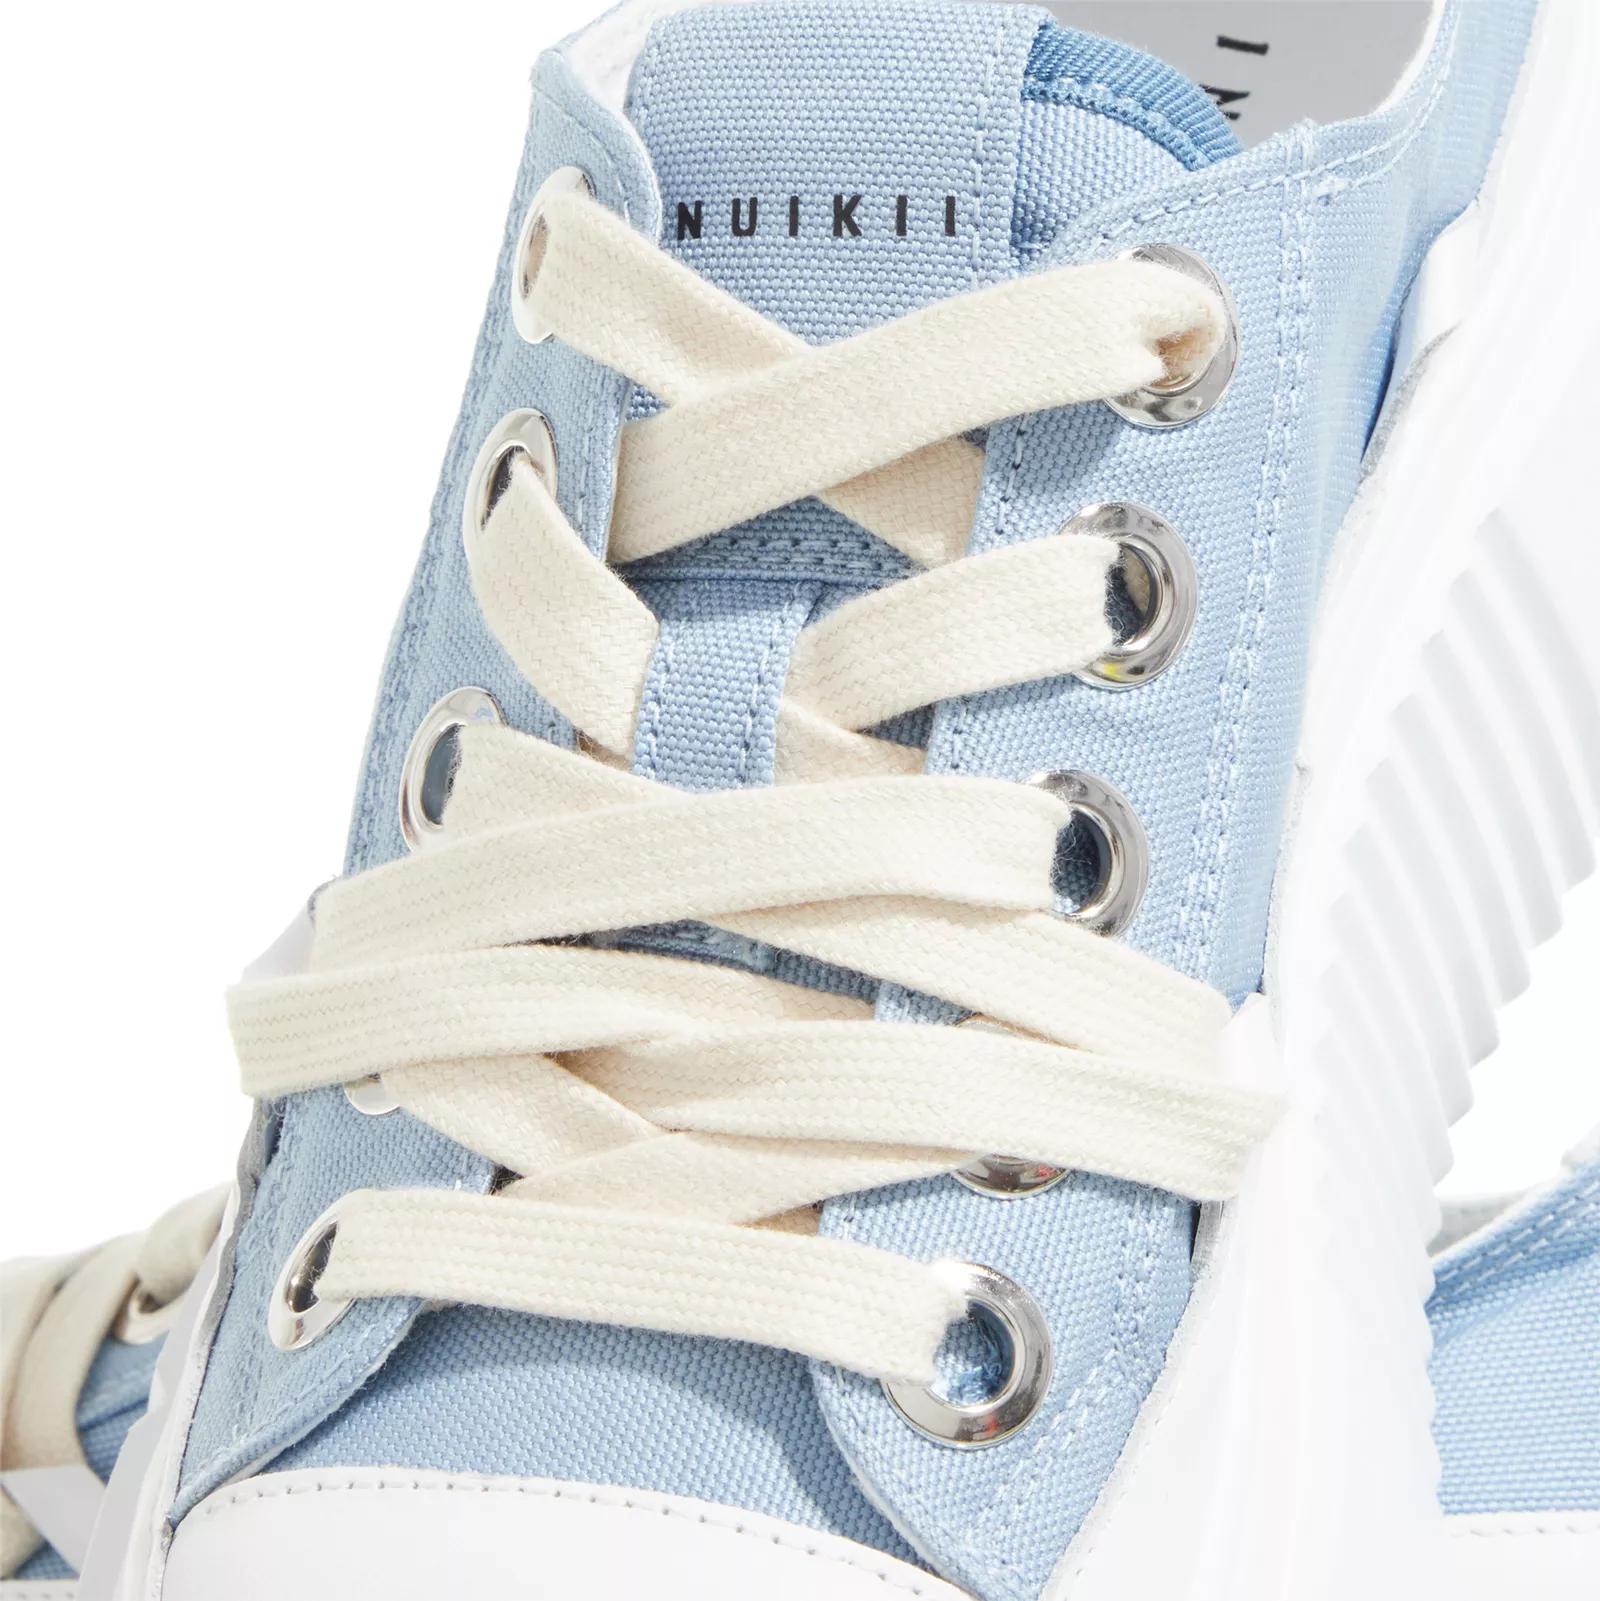 INUIKII Sneakers - Matilda Canvas Low 23 - Gr. 41 (EU) - in Blau - für Damen von INUIKII